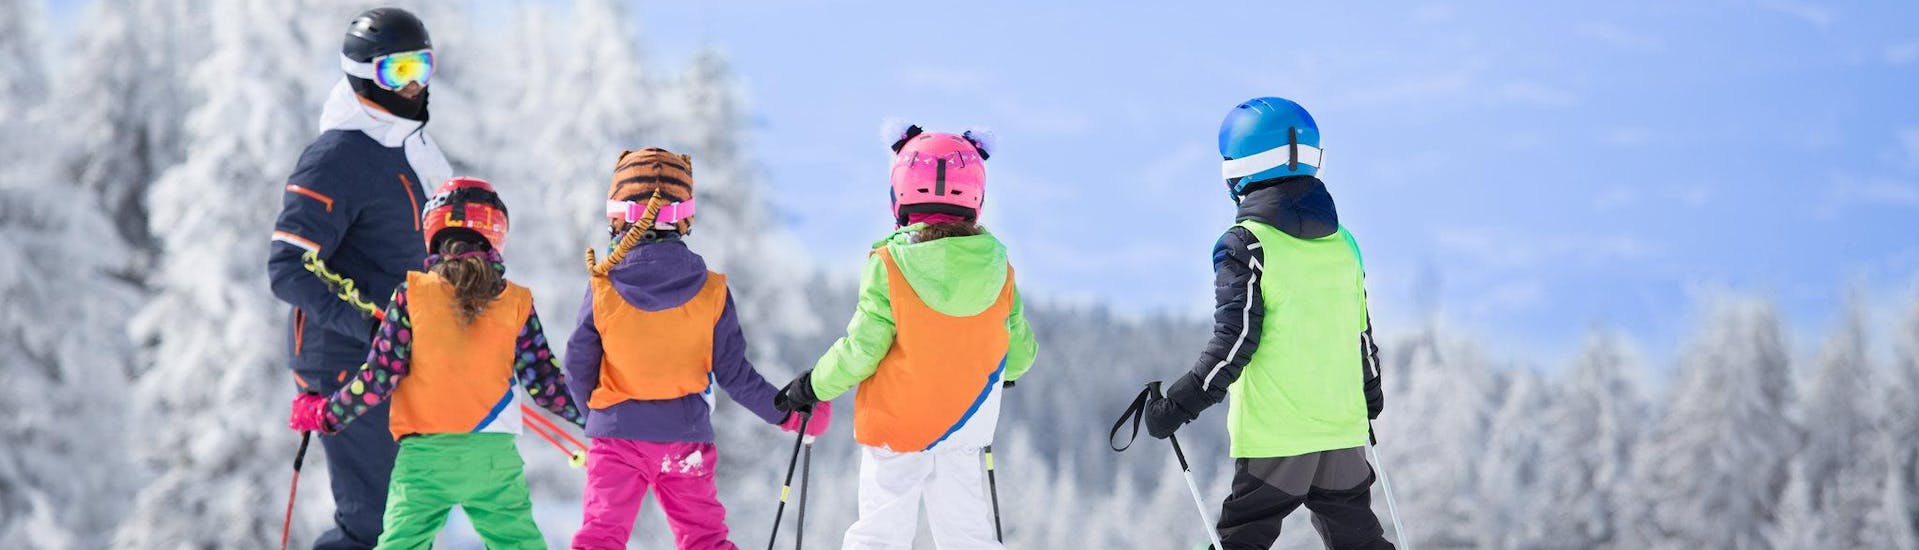 Drie skiërs bereiden zich voor op een skiles met een Engelstalige skileraar in het skigebied van Hochsölden.